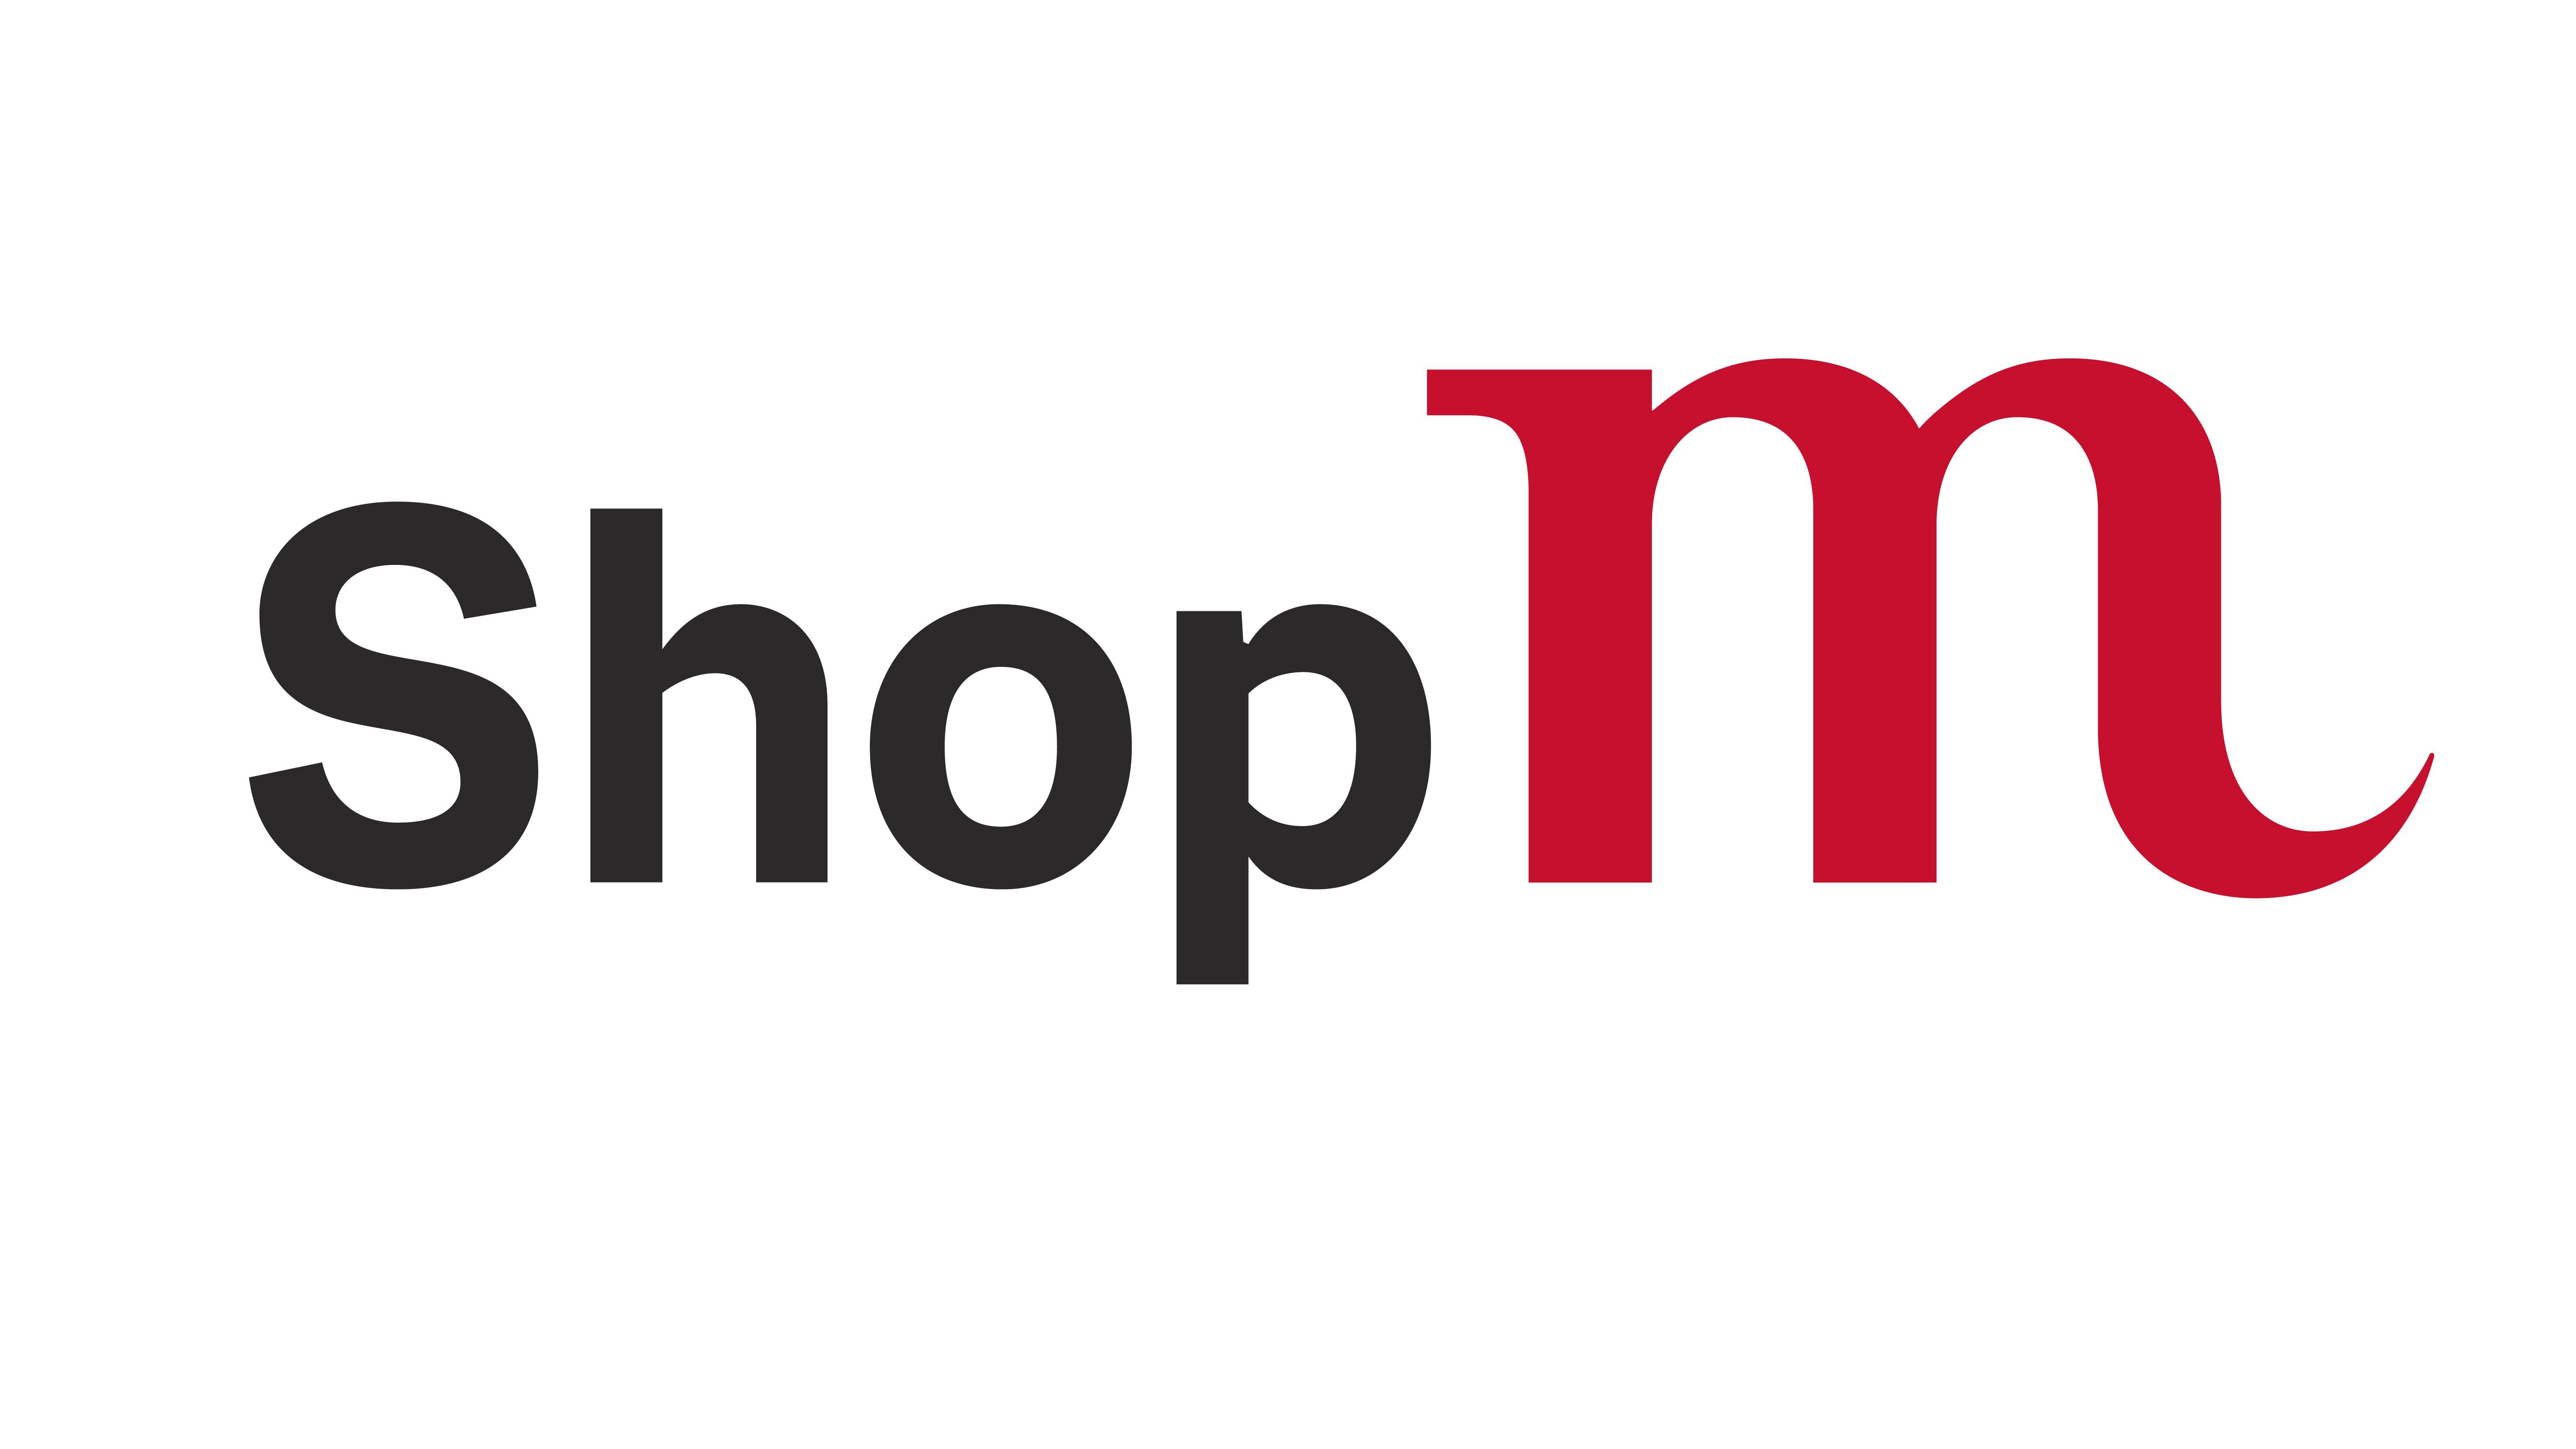 Museum Shop "ShopM" logo.